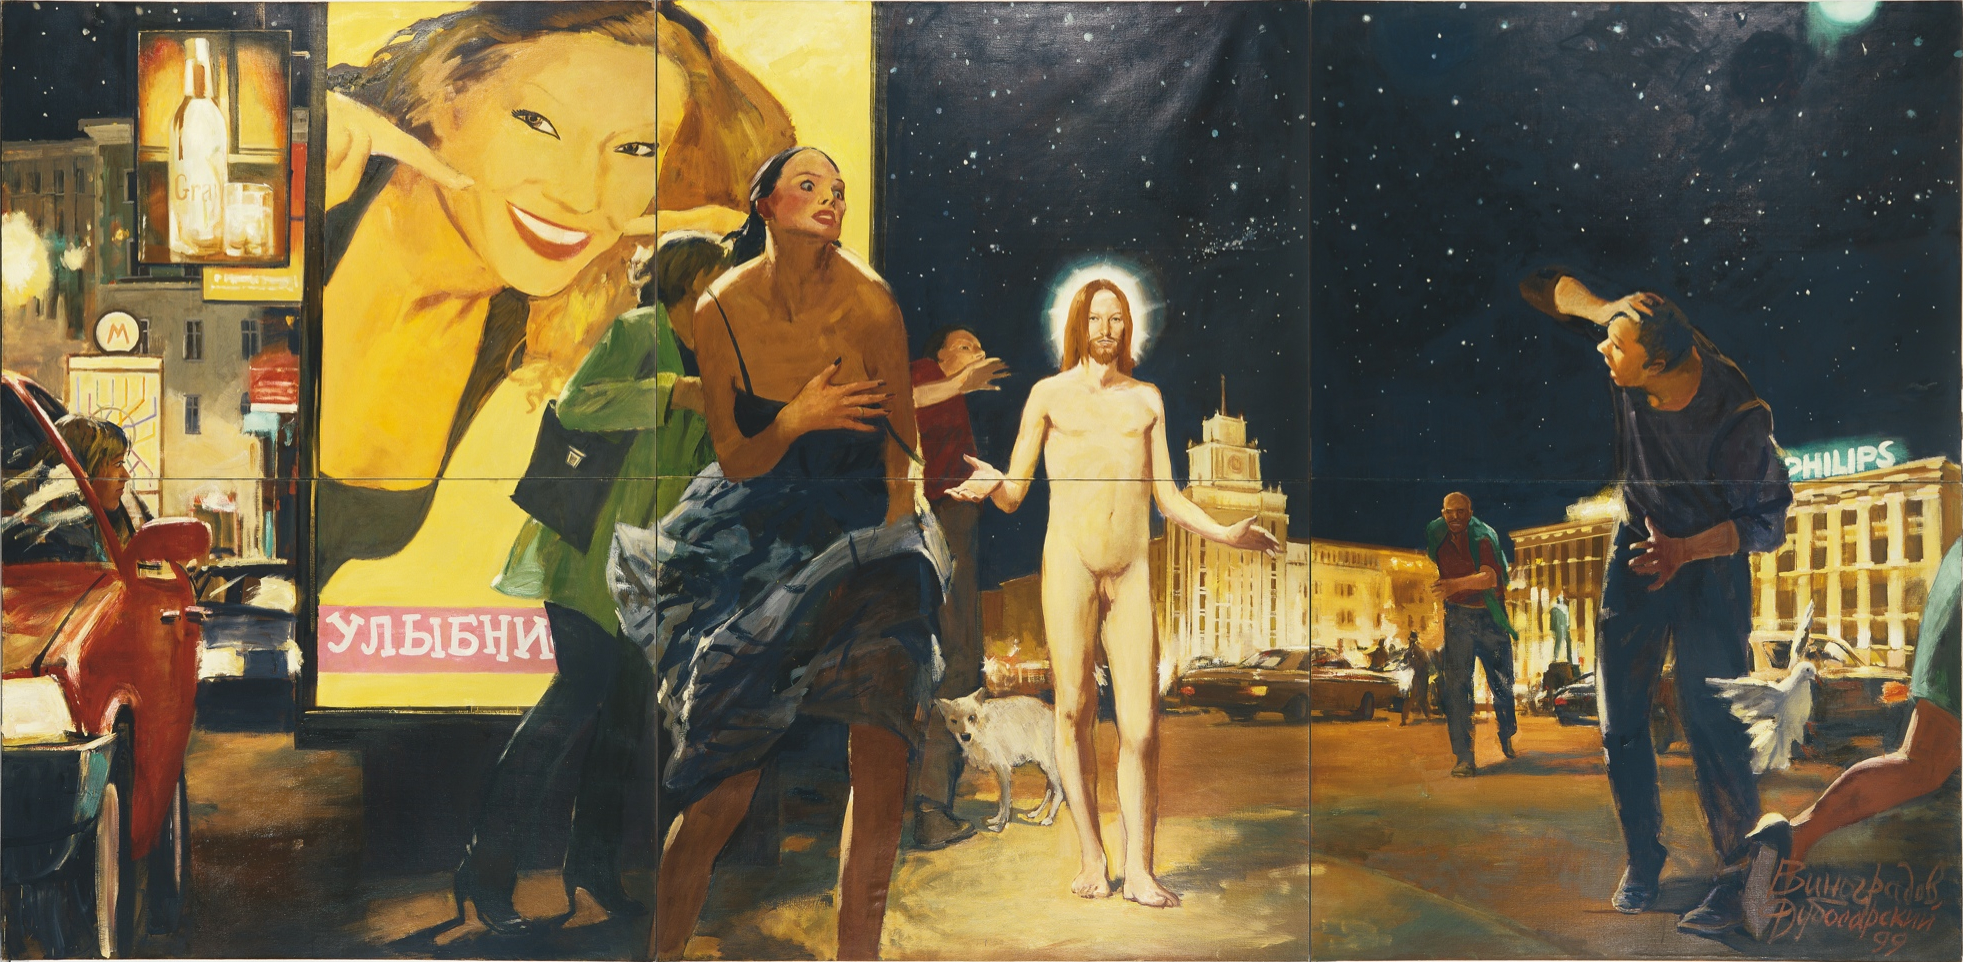   , 1999.   -   (Vladimir Dubossarsky - Aleksandr Vinogradov) -  . -.  . Contemporary Russian Art